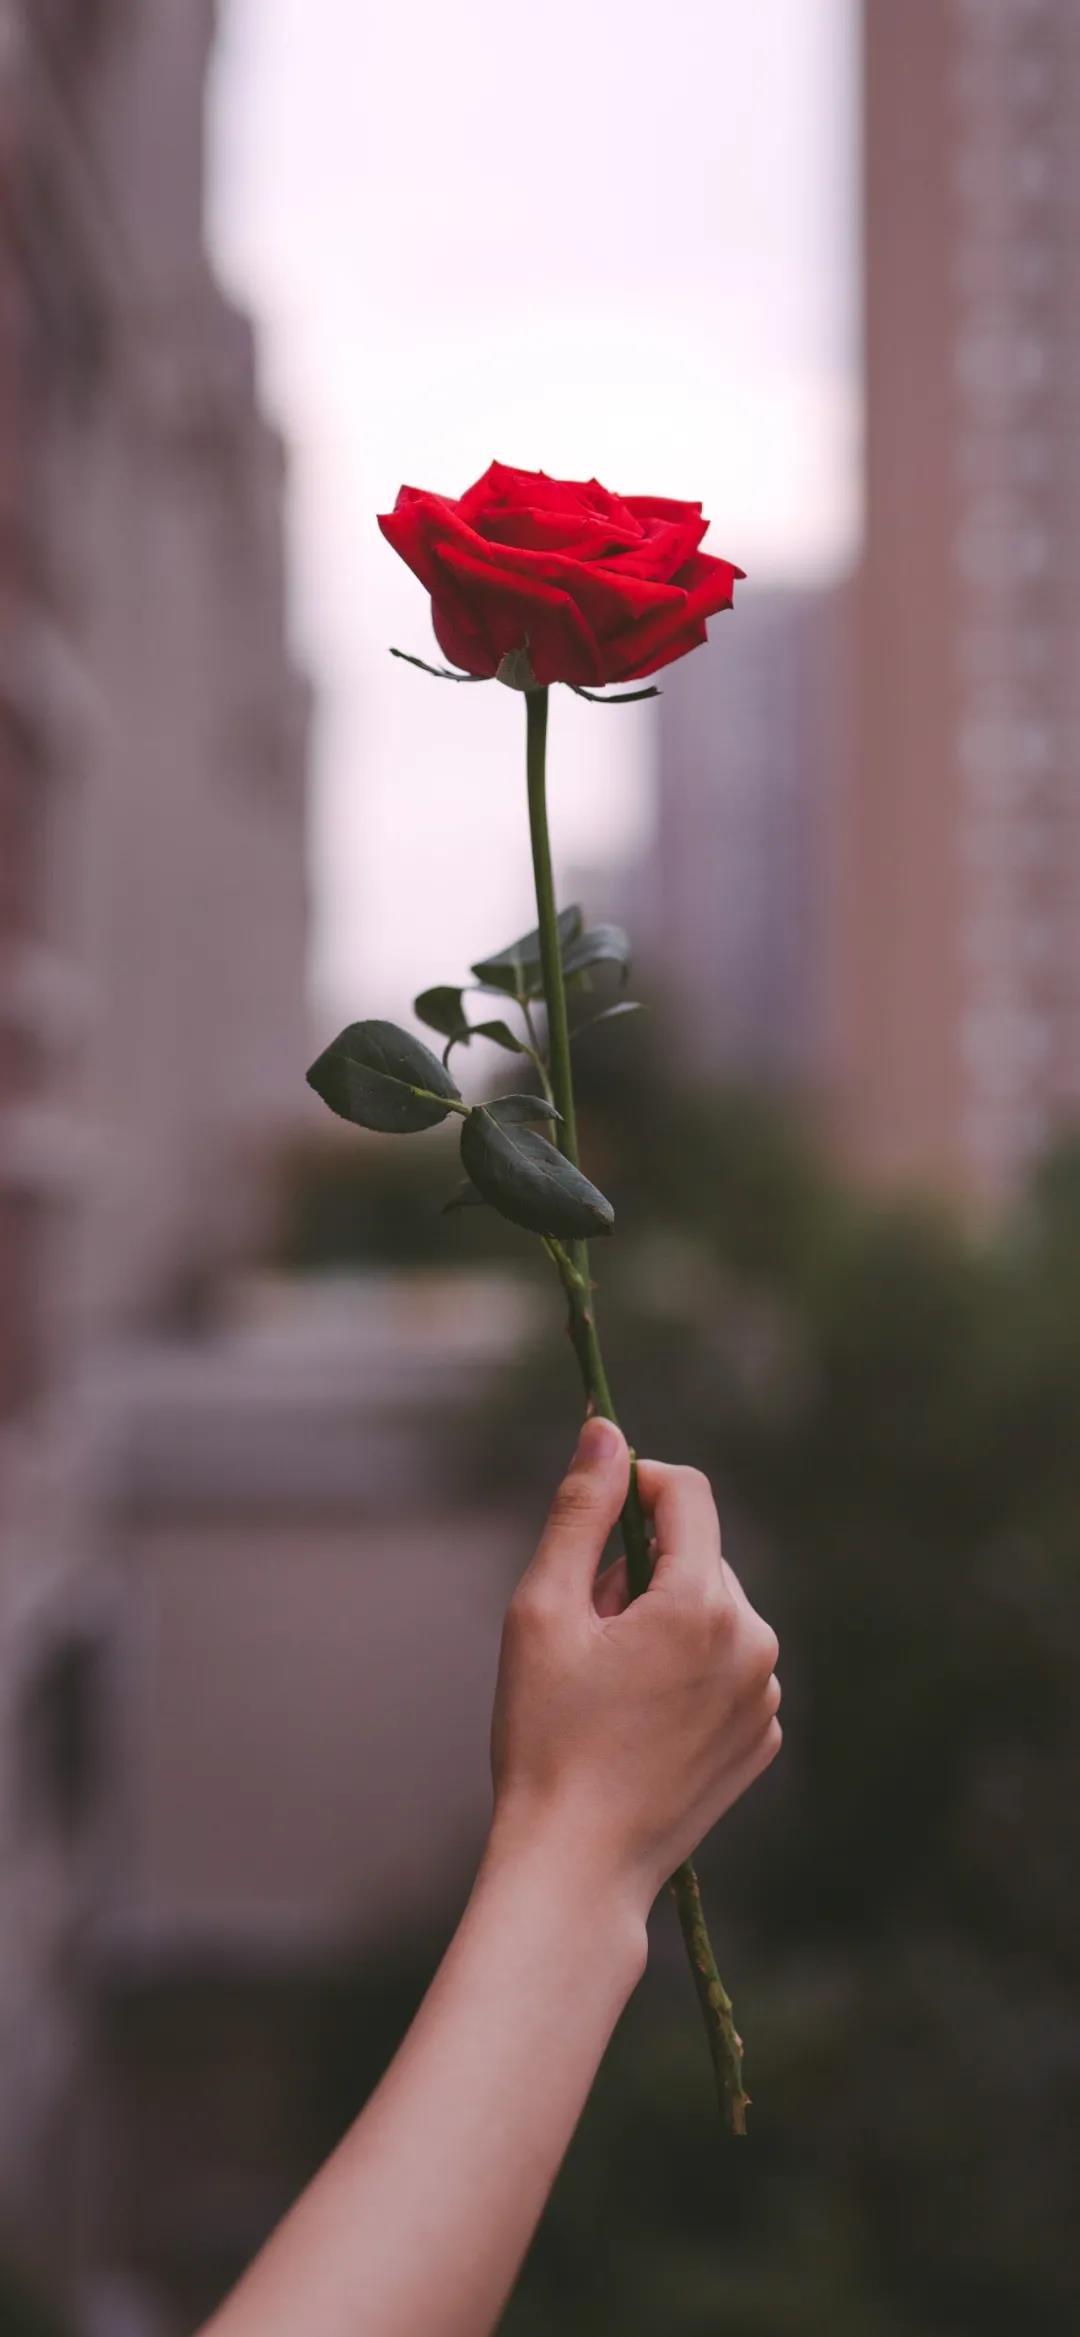 一枝红色玫瑰花唯美伤感手机壁纸图片